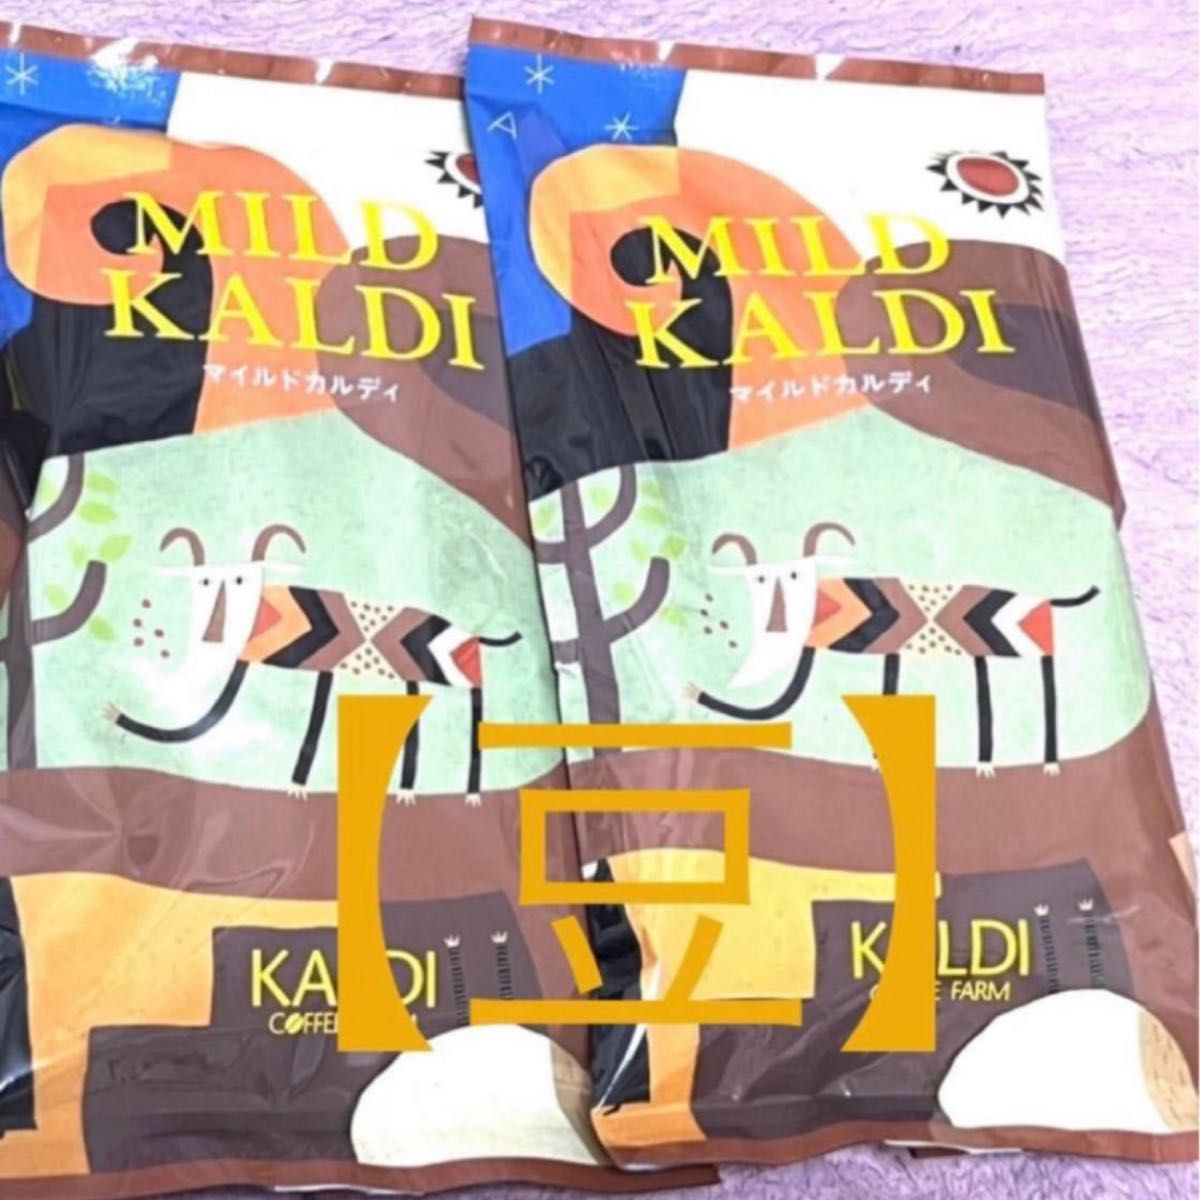 KALDI カルディ マイルドカルディ コーヒー豆『豆のまま』200g×2袋 未開封 ④